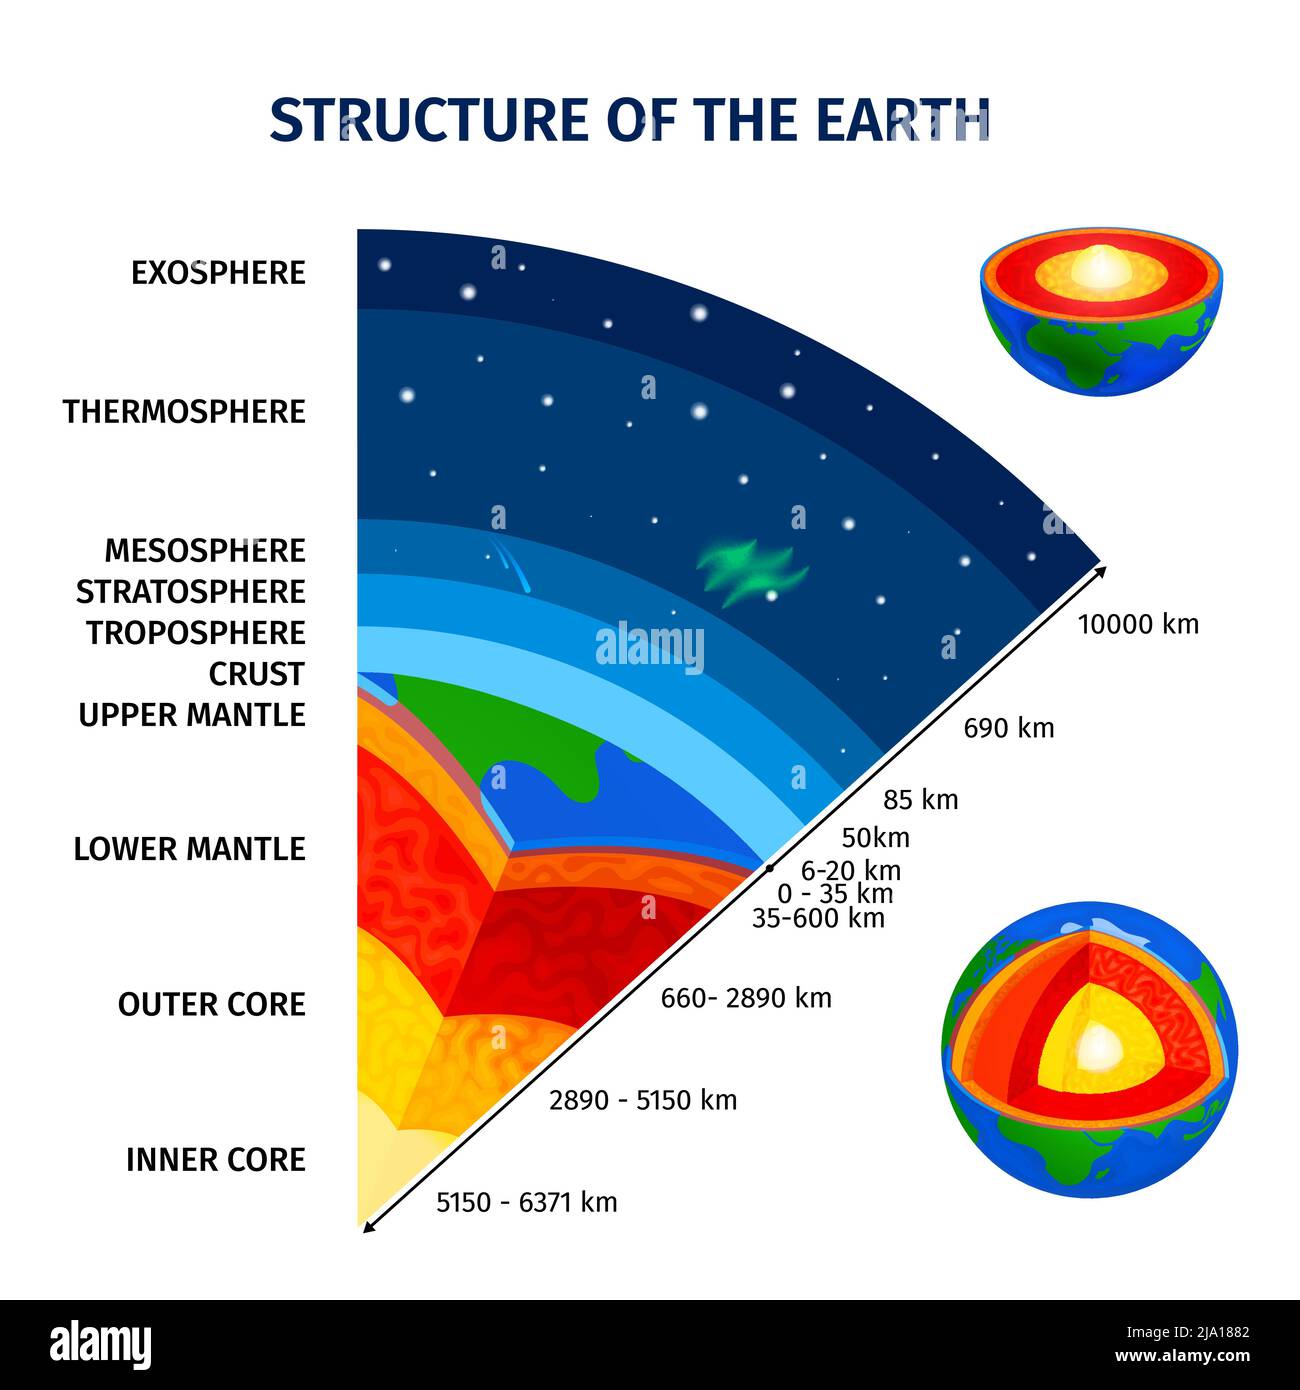 Erde und Atmosphärenstruktur pädagogische Infografiken Poster mit Kernmantel Kruste Troposphäre Stratosphäre Mesosphäre Thermosphäre Exosphäre Schicht Stock Vektor